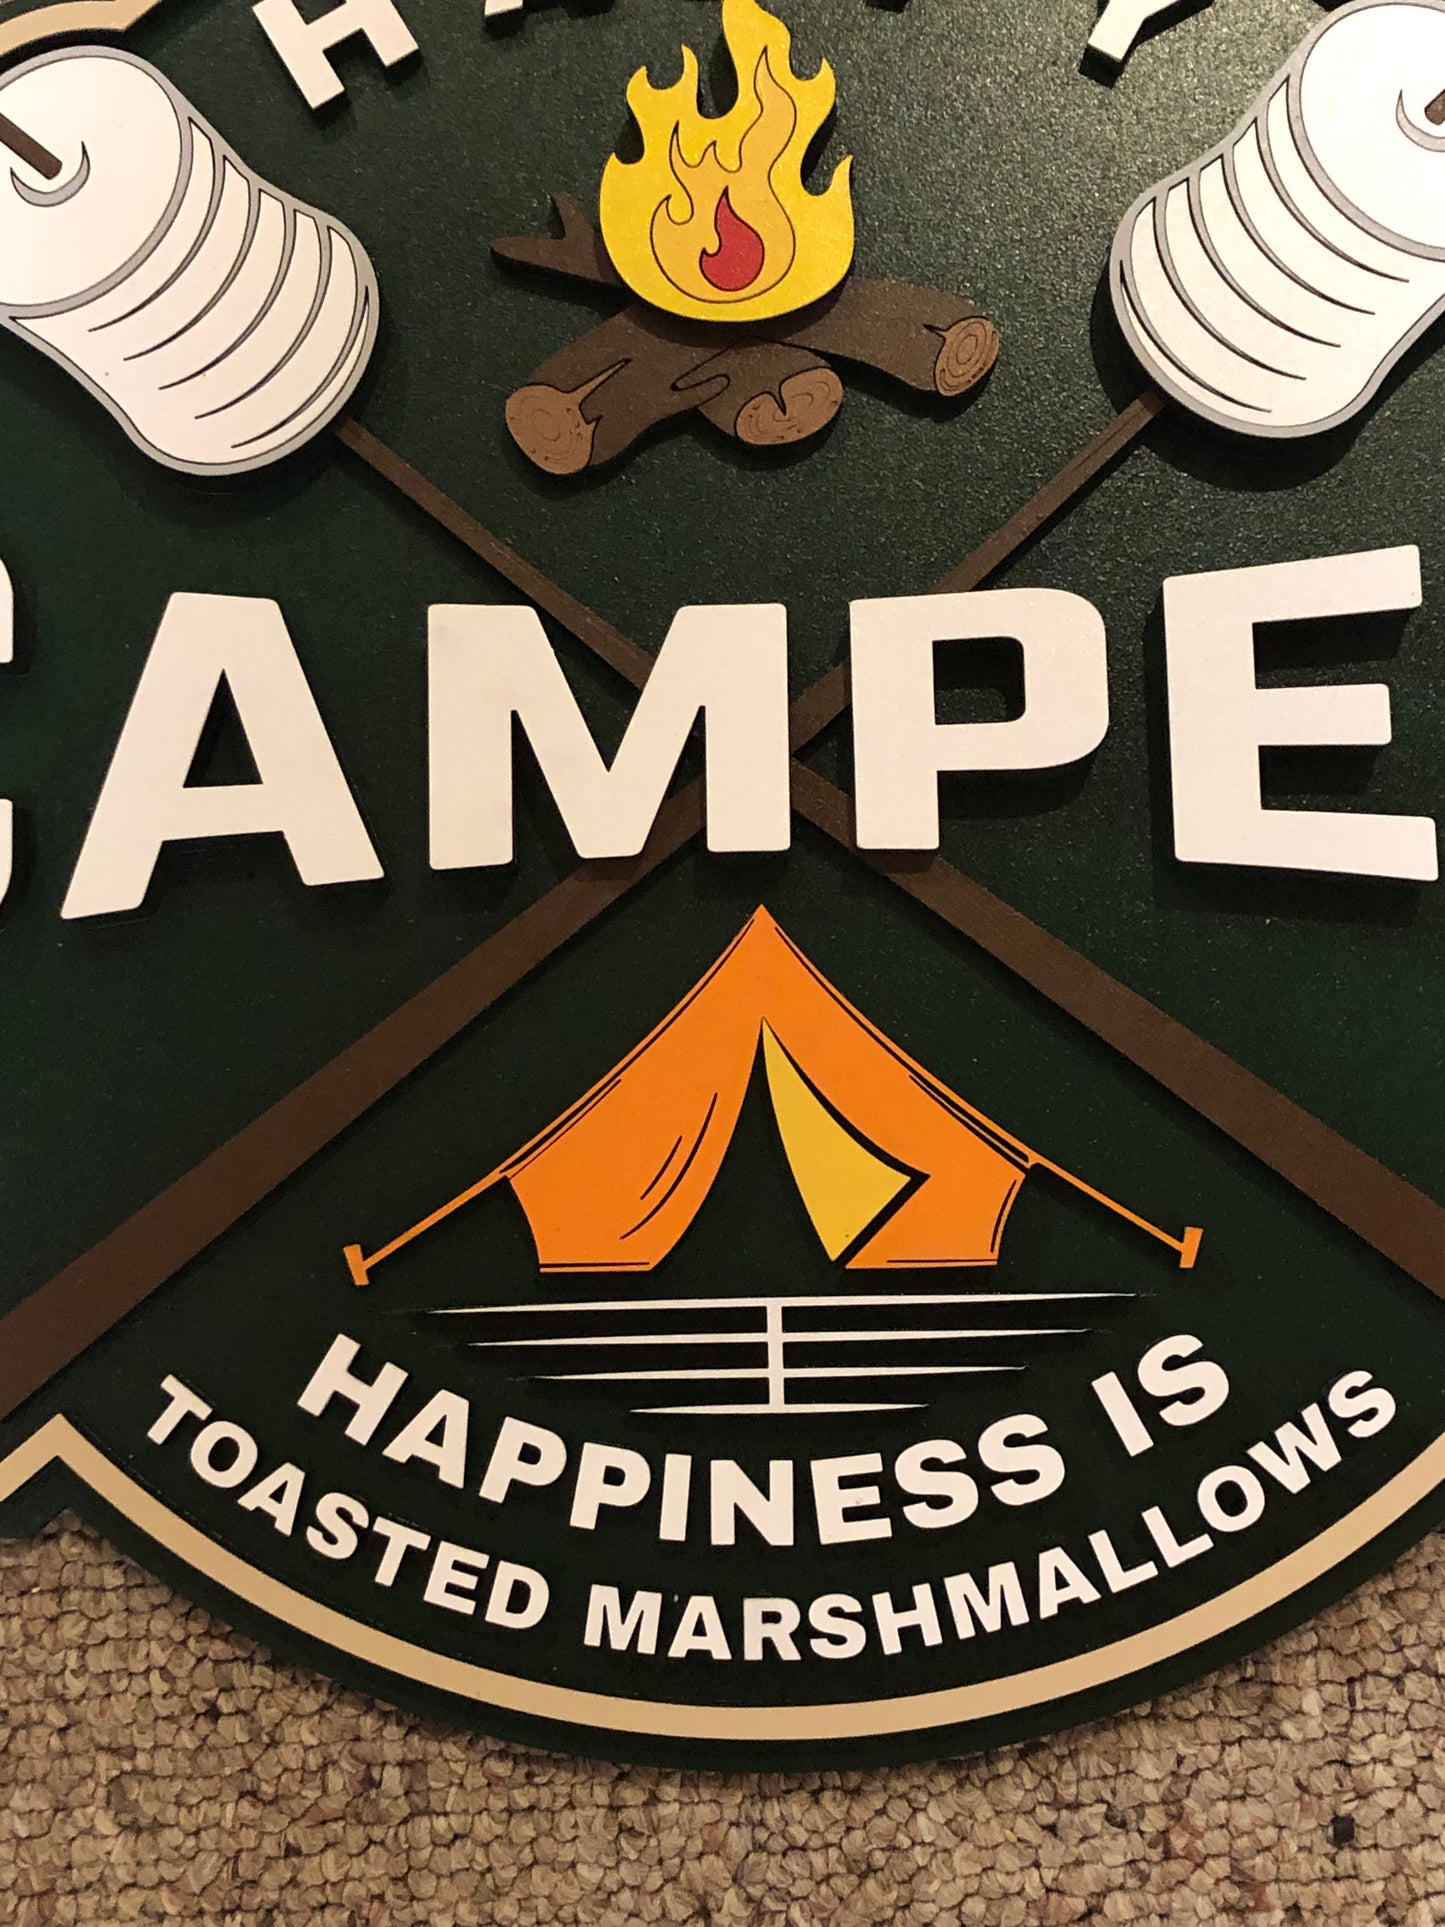 Happy Camper S’mores